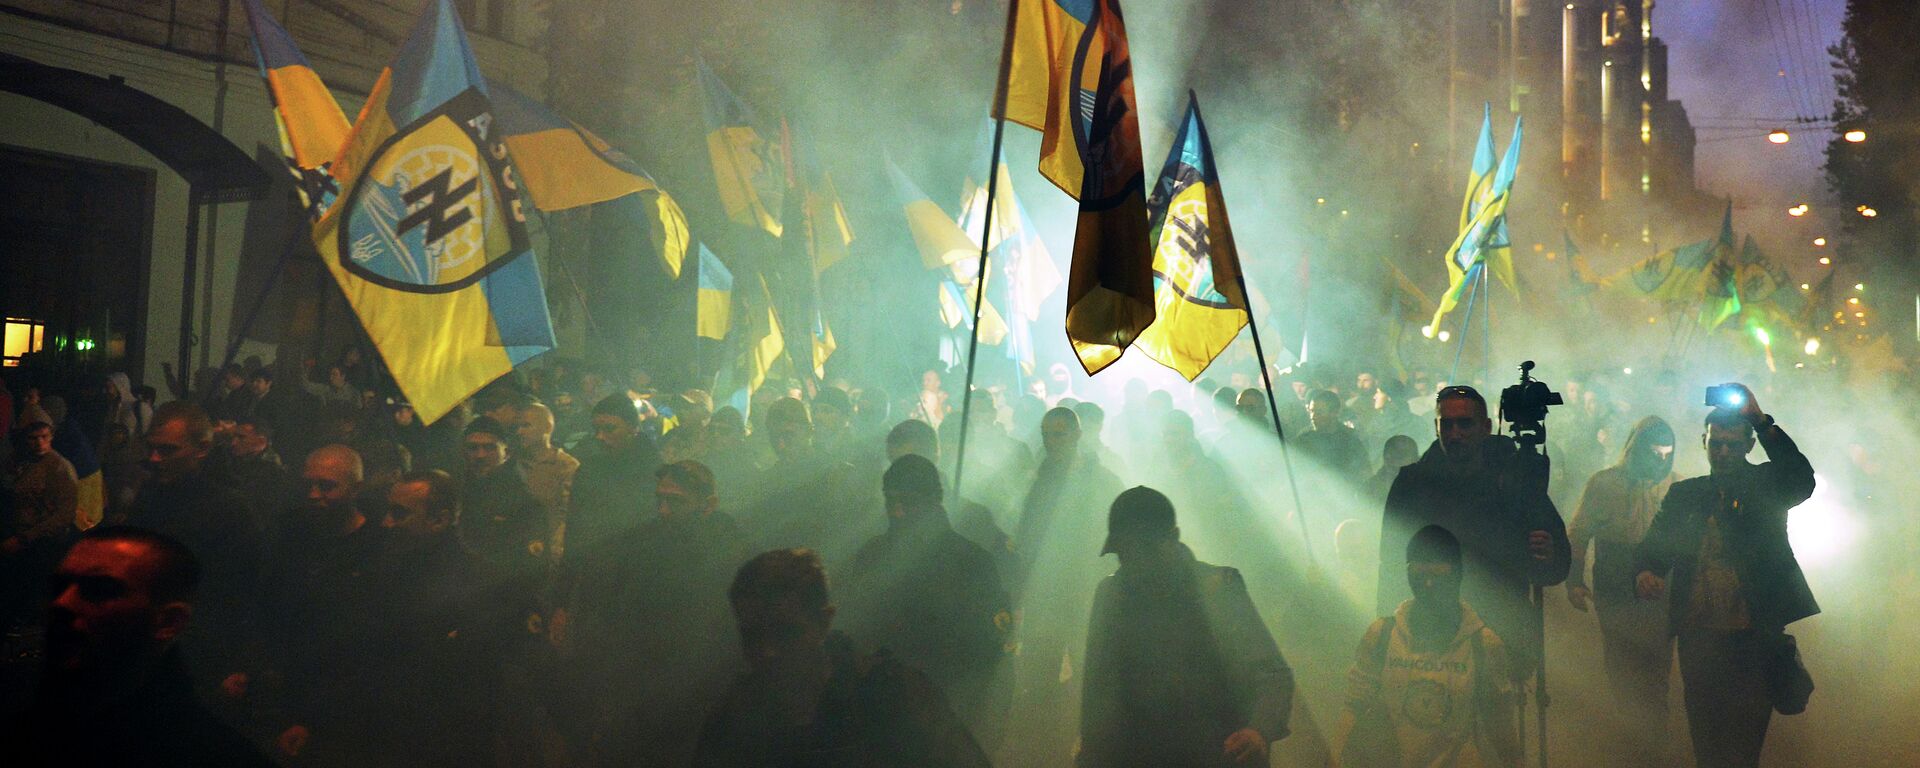 Ukrajinski nacionalisti iz Azov bataljona tokom protesta u Kijevu. - Sputnik Srbija, 1920, 28.03.2022